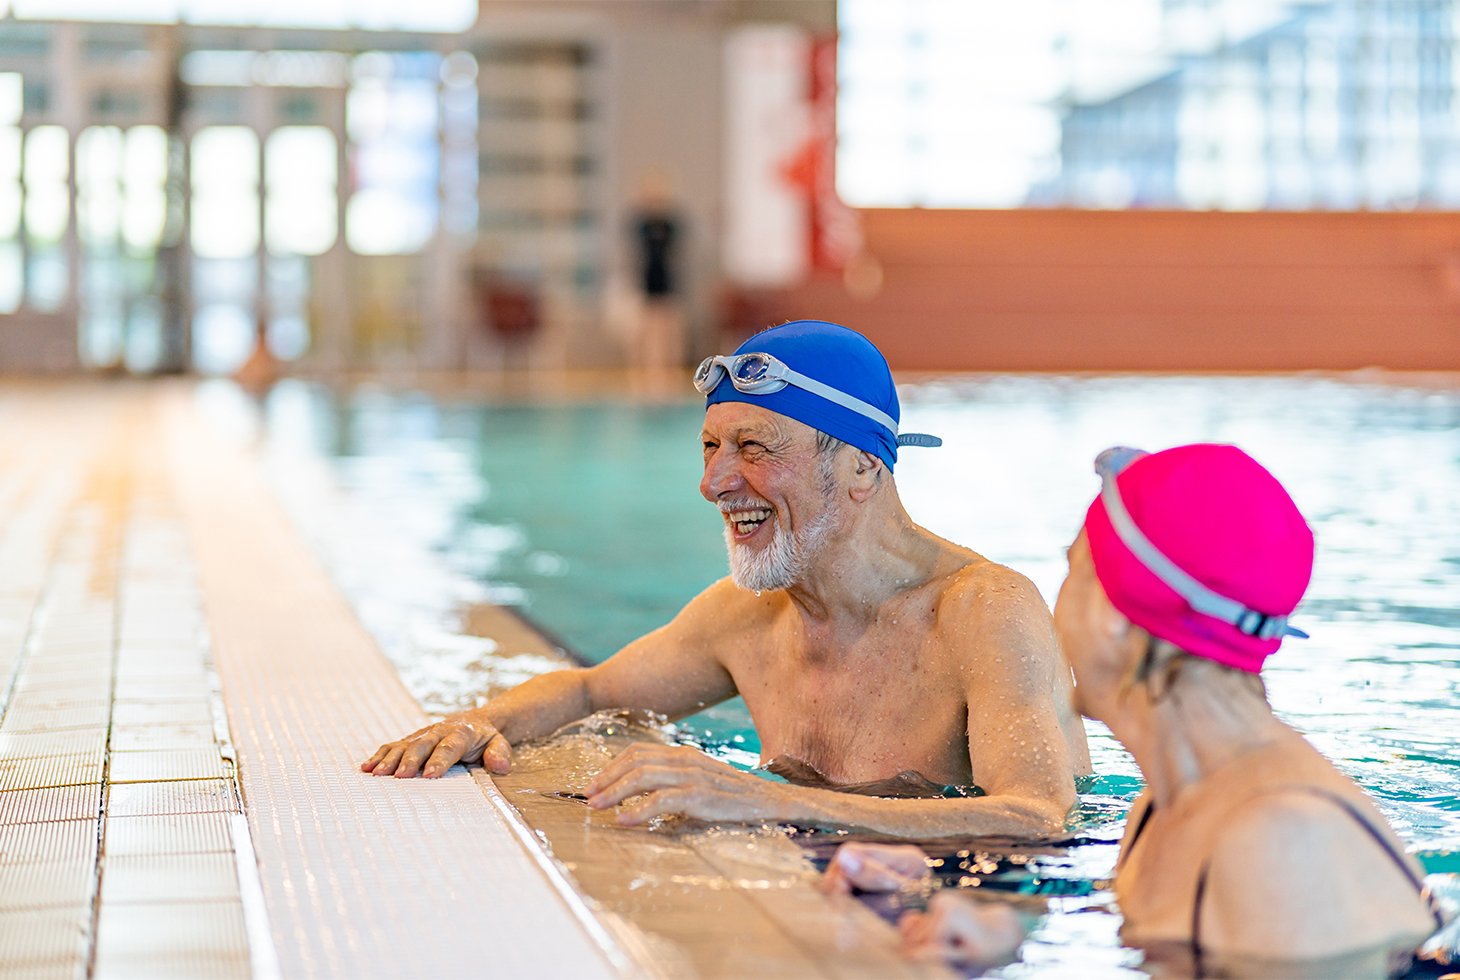 Deux seniors lors de leur séance de natation, une activité physique recommandée pour prévenir et réduire les fuites urinaires.